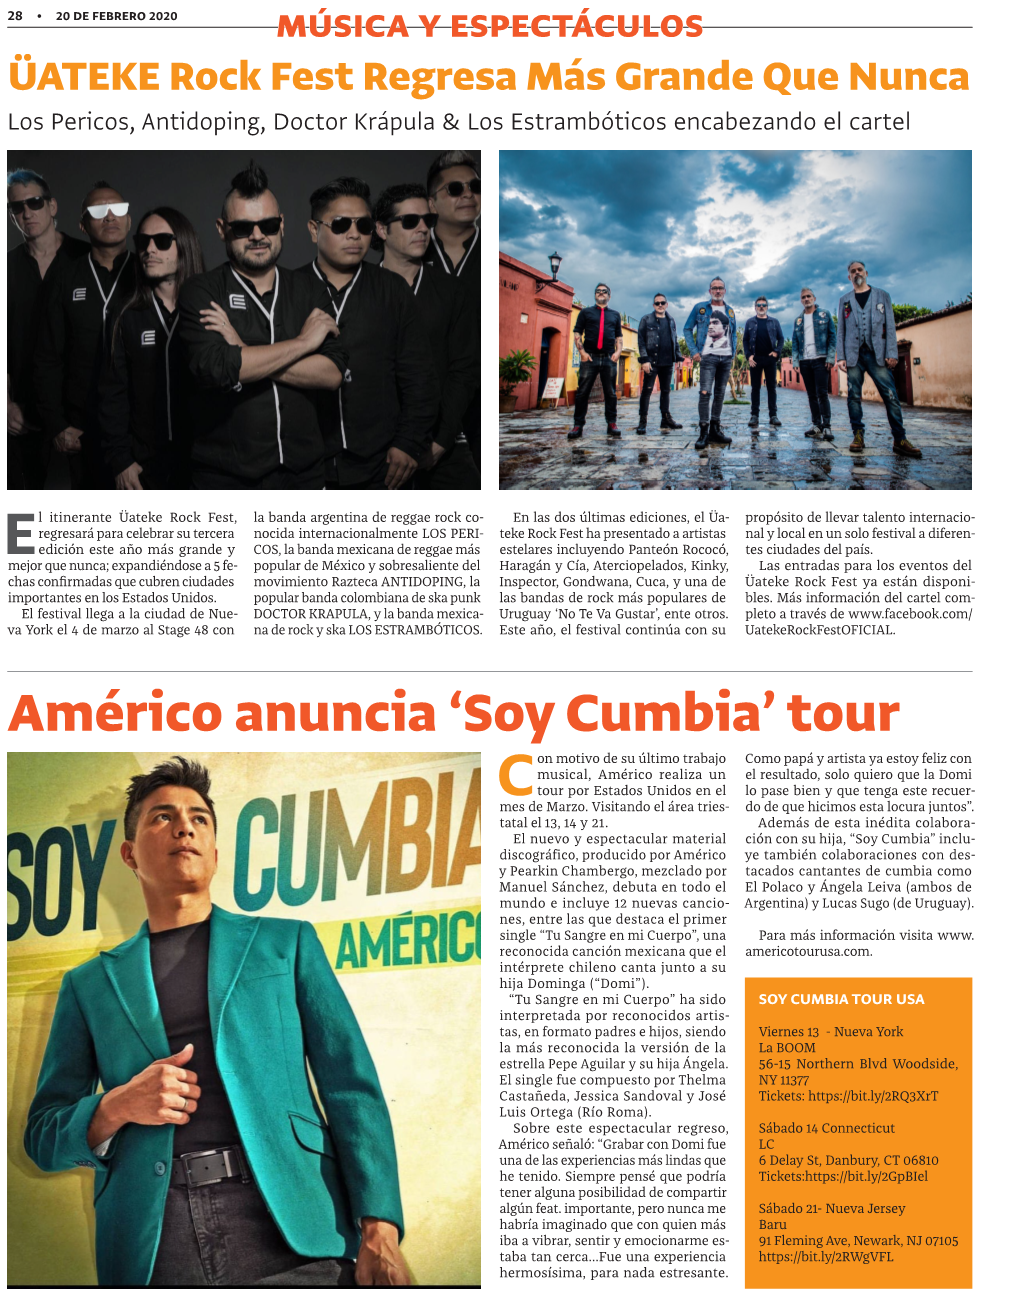 Américo Anuncia 'Soy Cumbia' Tour